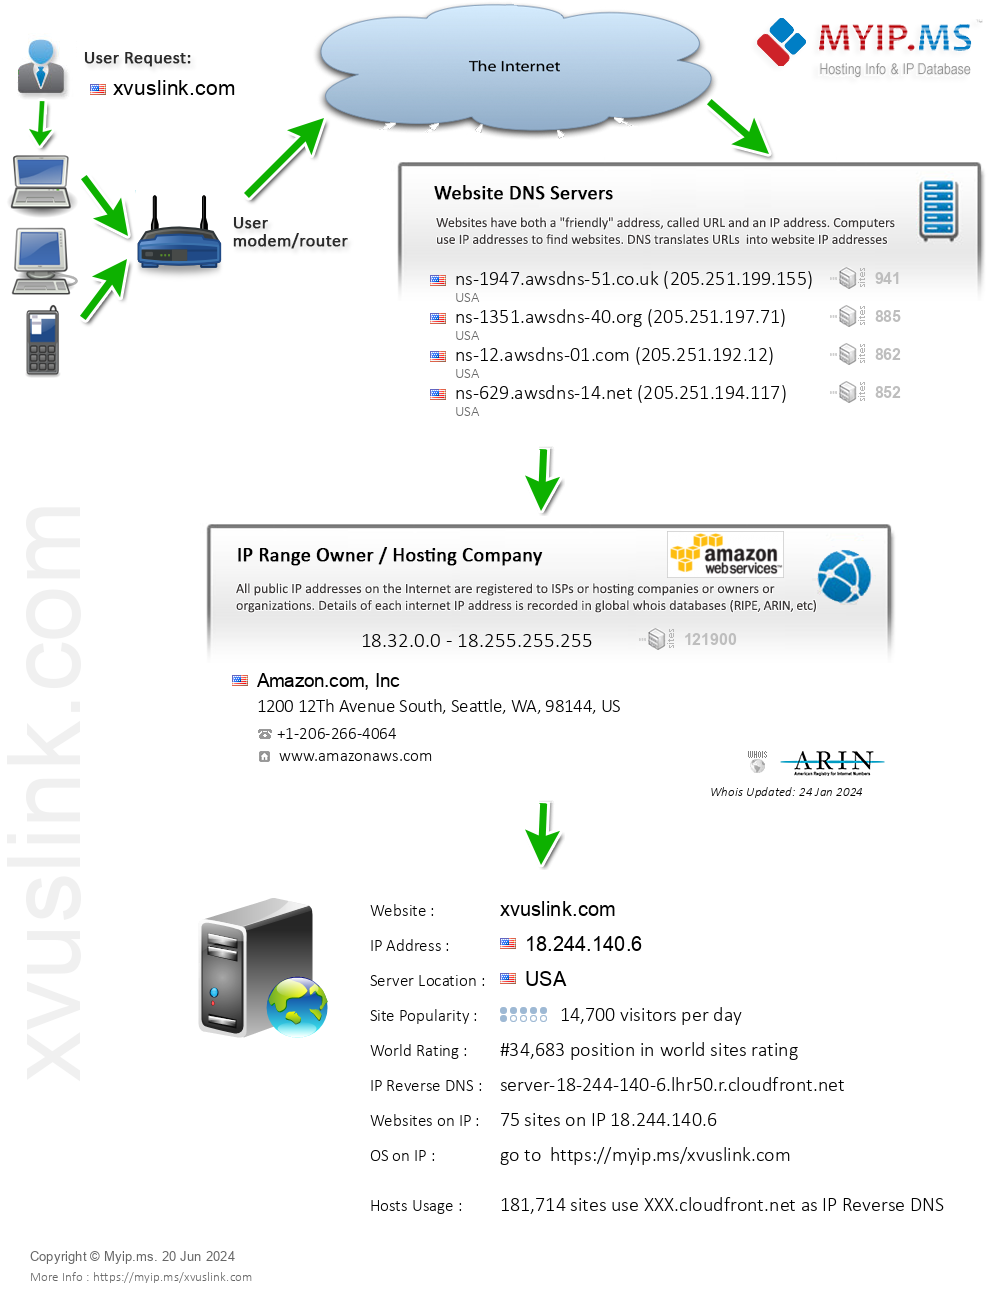 Xvuslink.com - Website Hosting Visual IP Diagram